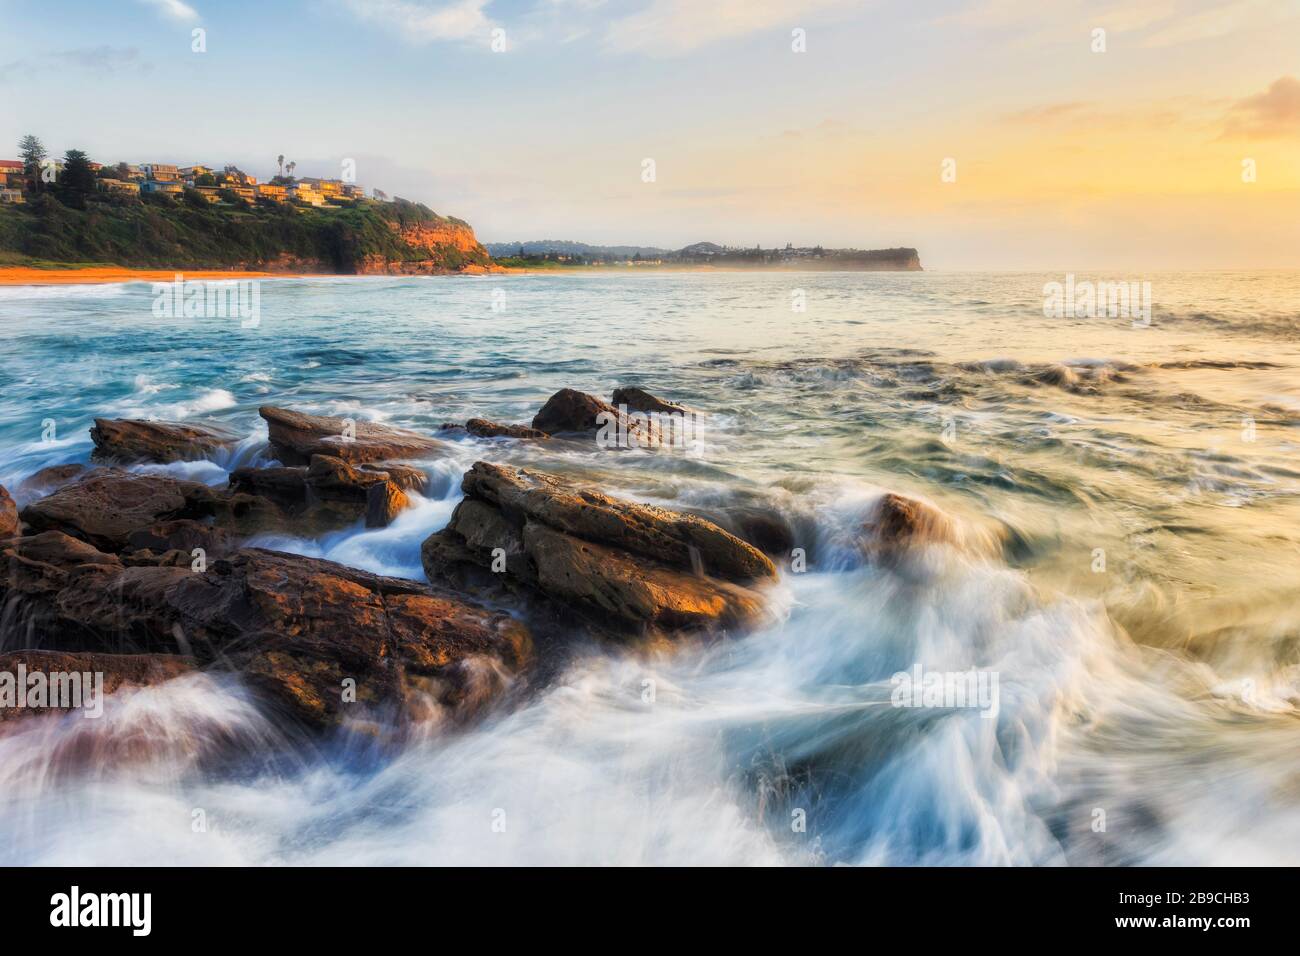 La clave de las rápidas olas que fluyen sobre rocas de arenisca en la playa Warriewood en Sydney al amanecer. Foto de stock